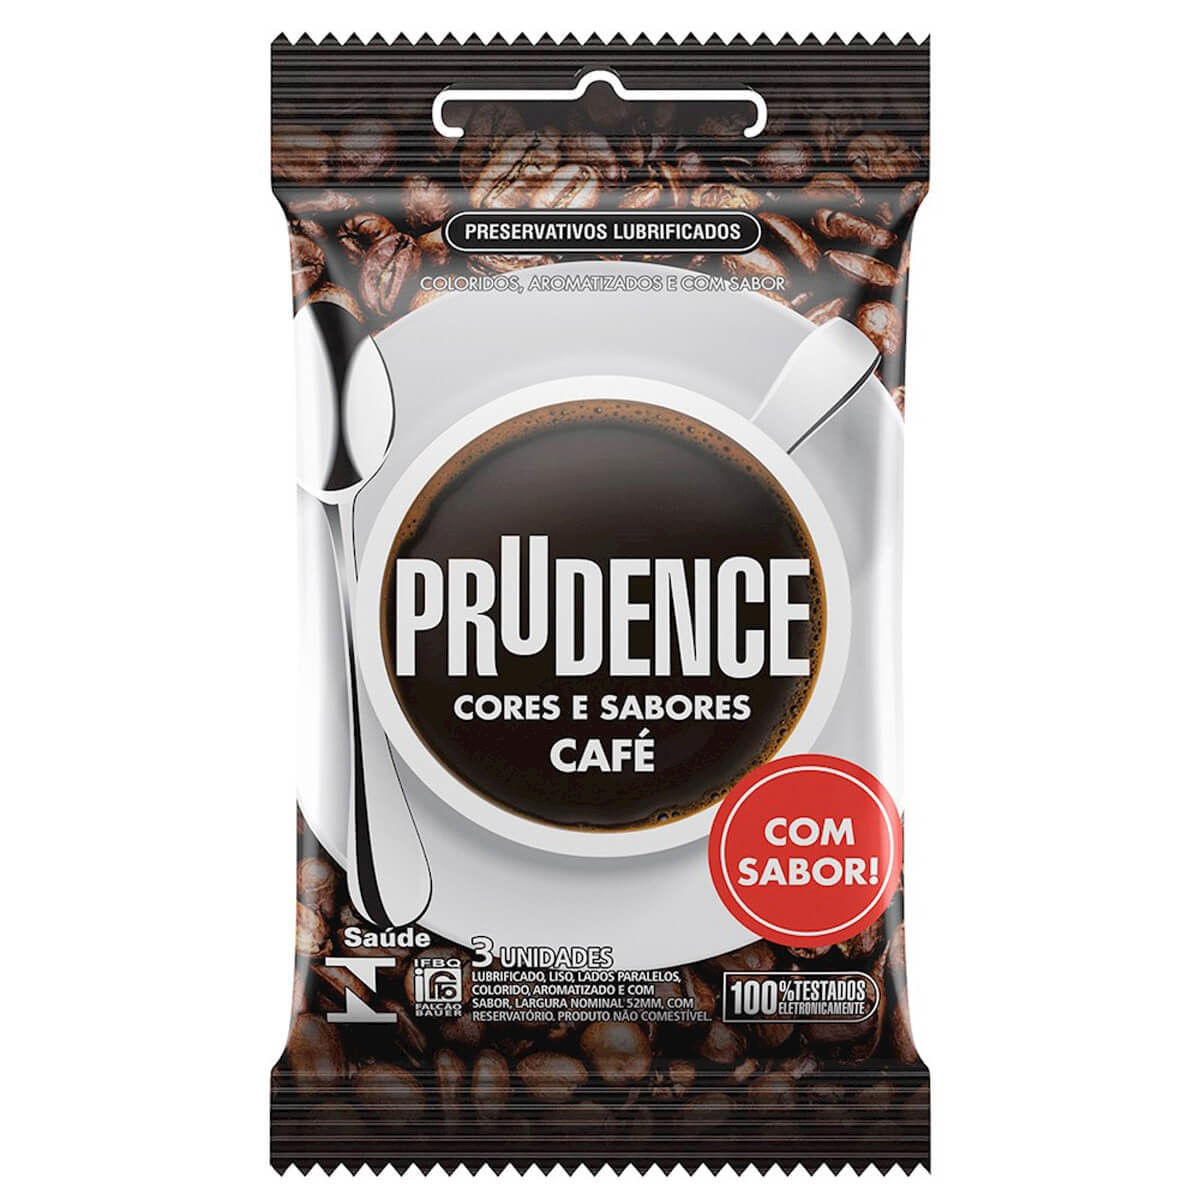 Preservativo em Látex Cores e Sabores Café Prudence